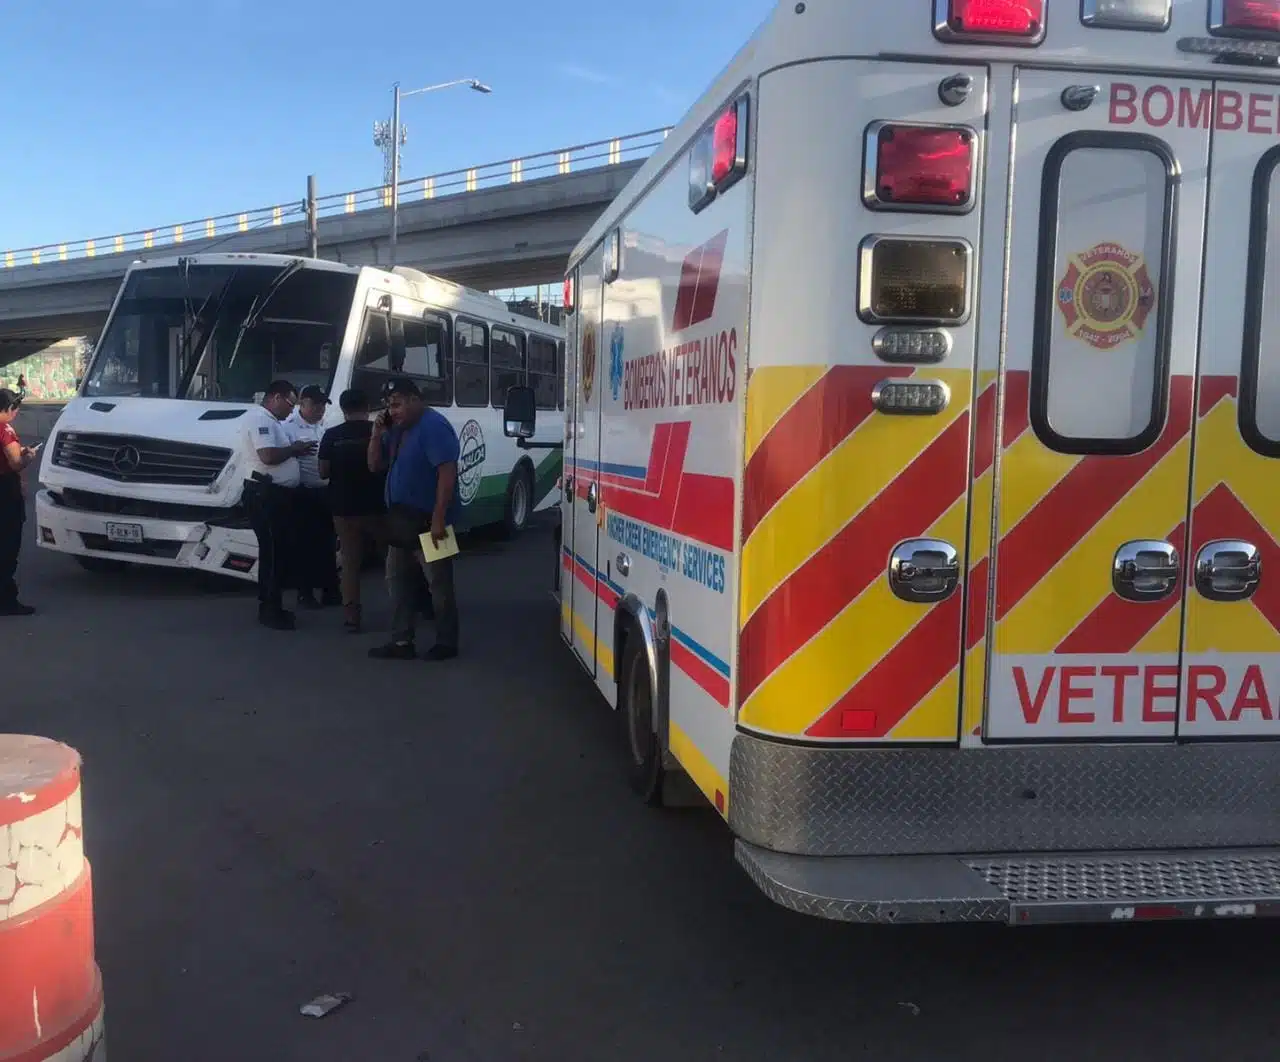 ¡Encontronazo! Aparatoso accidente entre urbano y camioneta deja 6 lesionados al sur de Mazatlán 